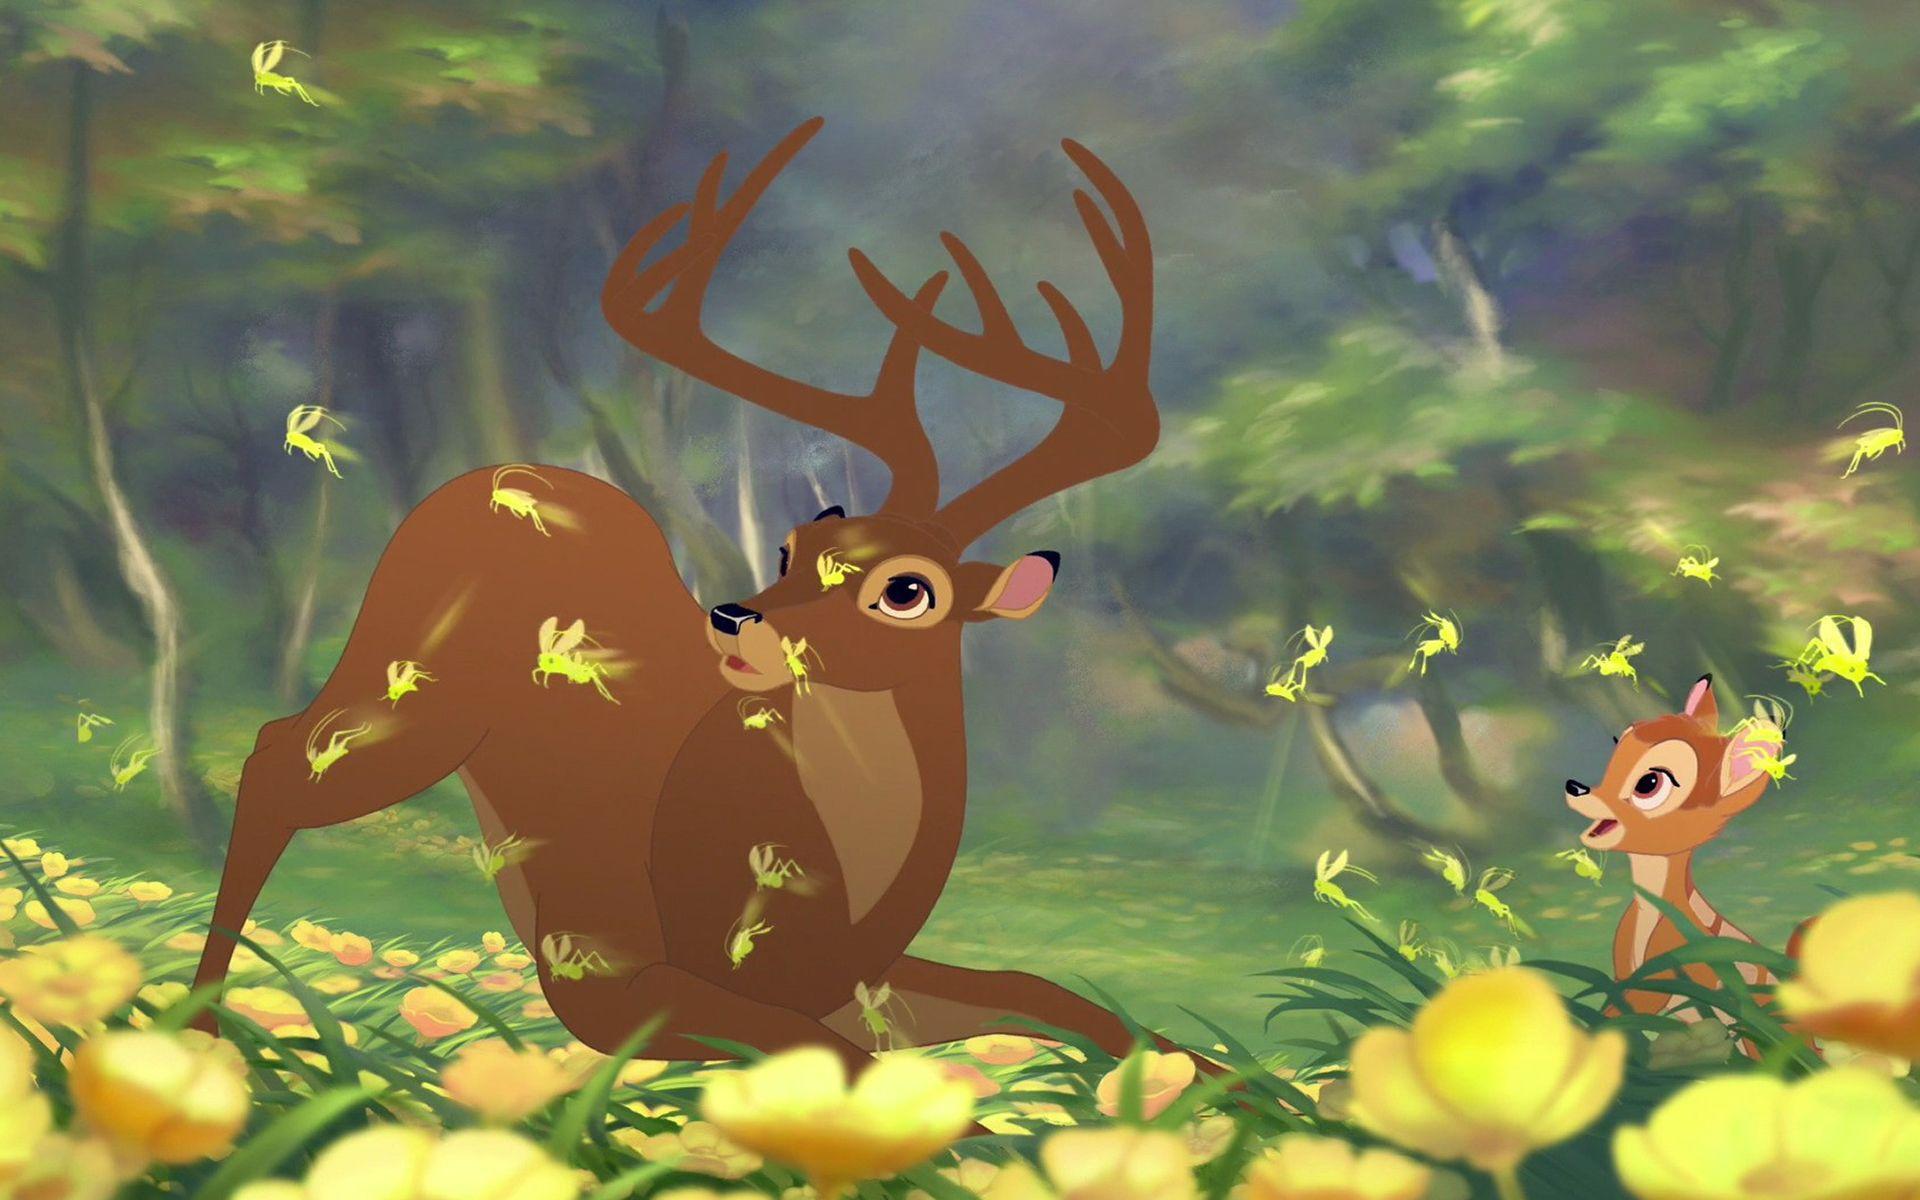 Cute Cartoons Bambi For Mac Image Wallpaper Download Wallpaper